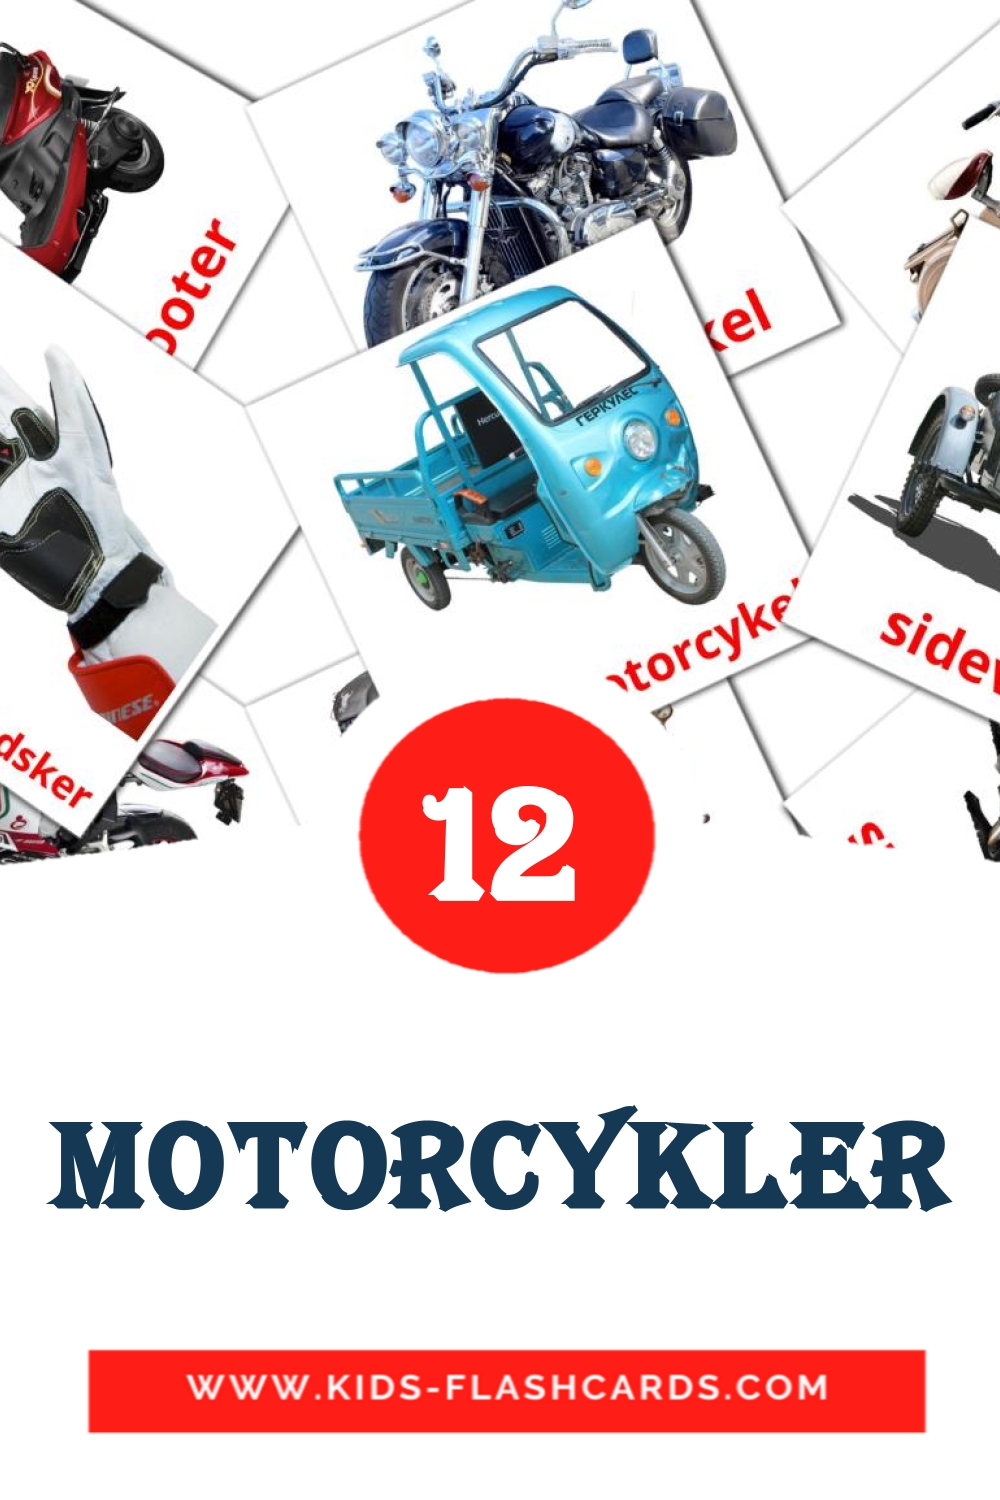 14 tarjetas didacticas de Motorcykler para el jardín de infancia en dansk